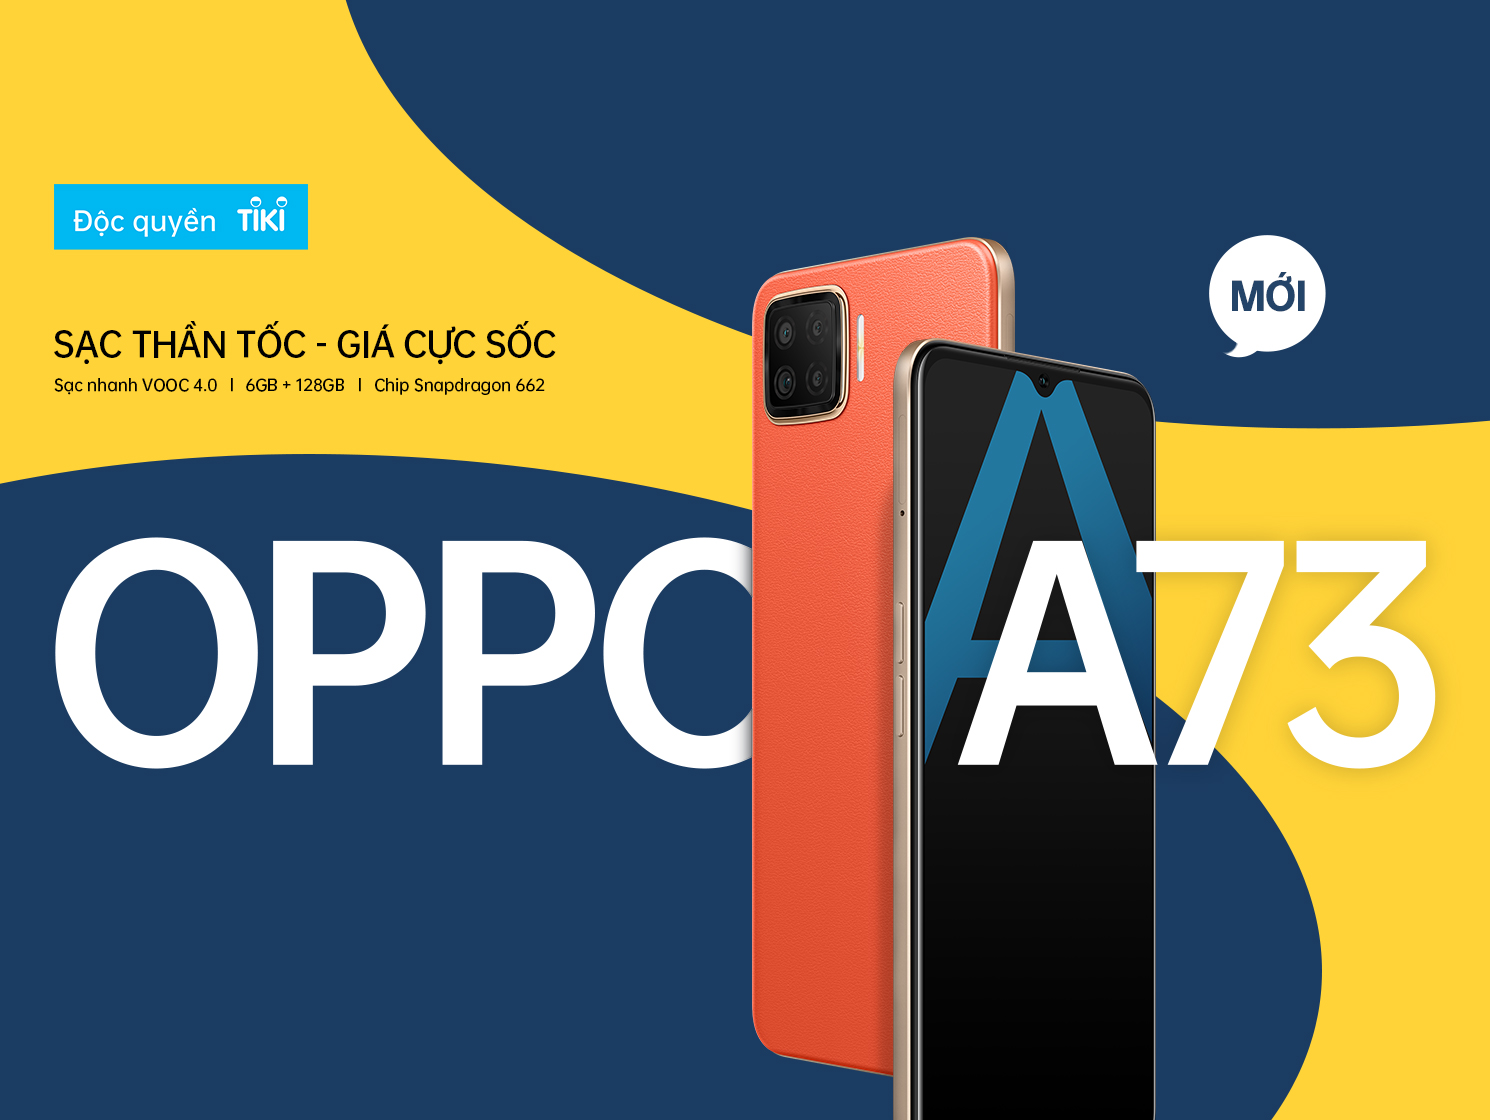 Oppo A73, điện thoại thông minh đầy tiện nghi với sạc thần tốc và giá cả phù hợp với túi tiền người dùng ở Việt Nam. Đi kèm với những tính năng hiện đại, Oppo A73 còn có những hình nền độc đáo và hấp dẫn. Hãy thưởng thức ngay những bức ảnh đầy nghệ thuật này.